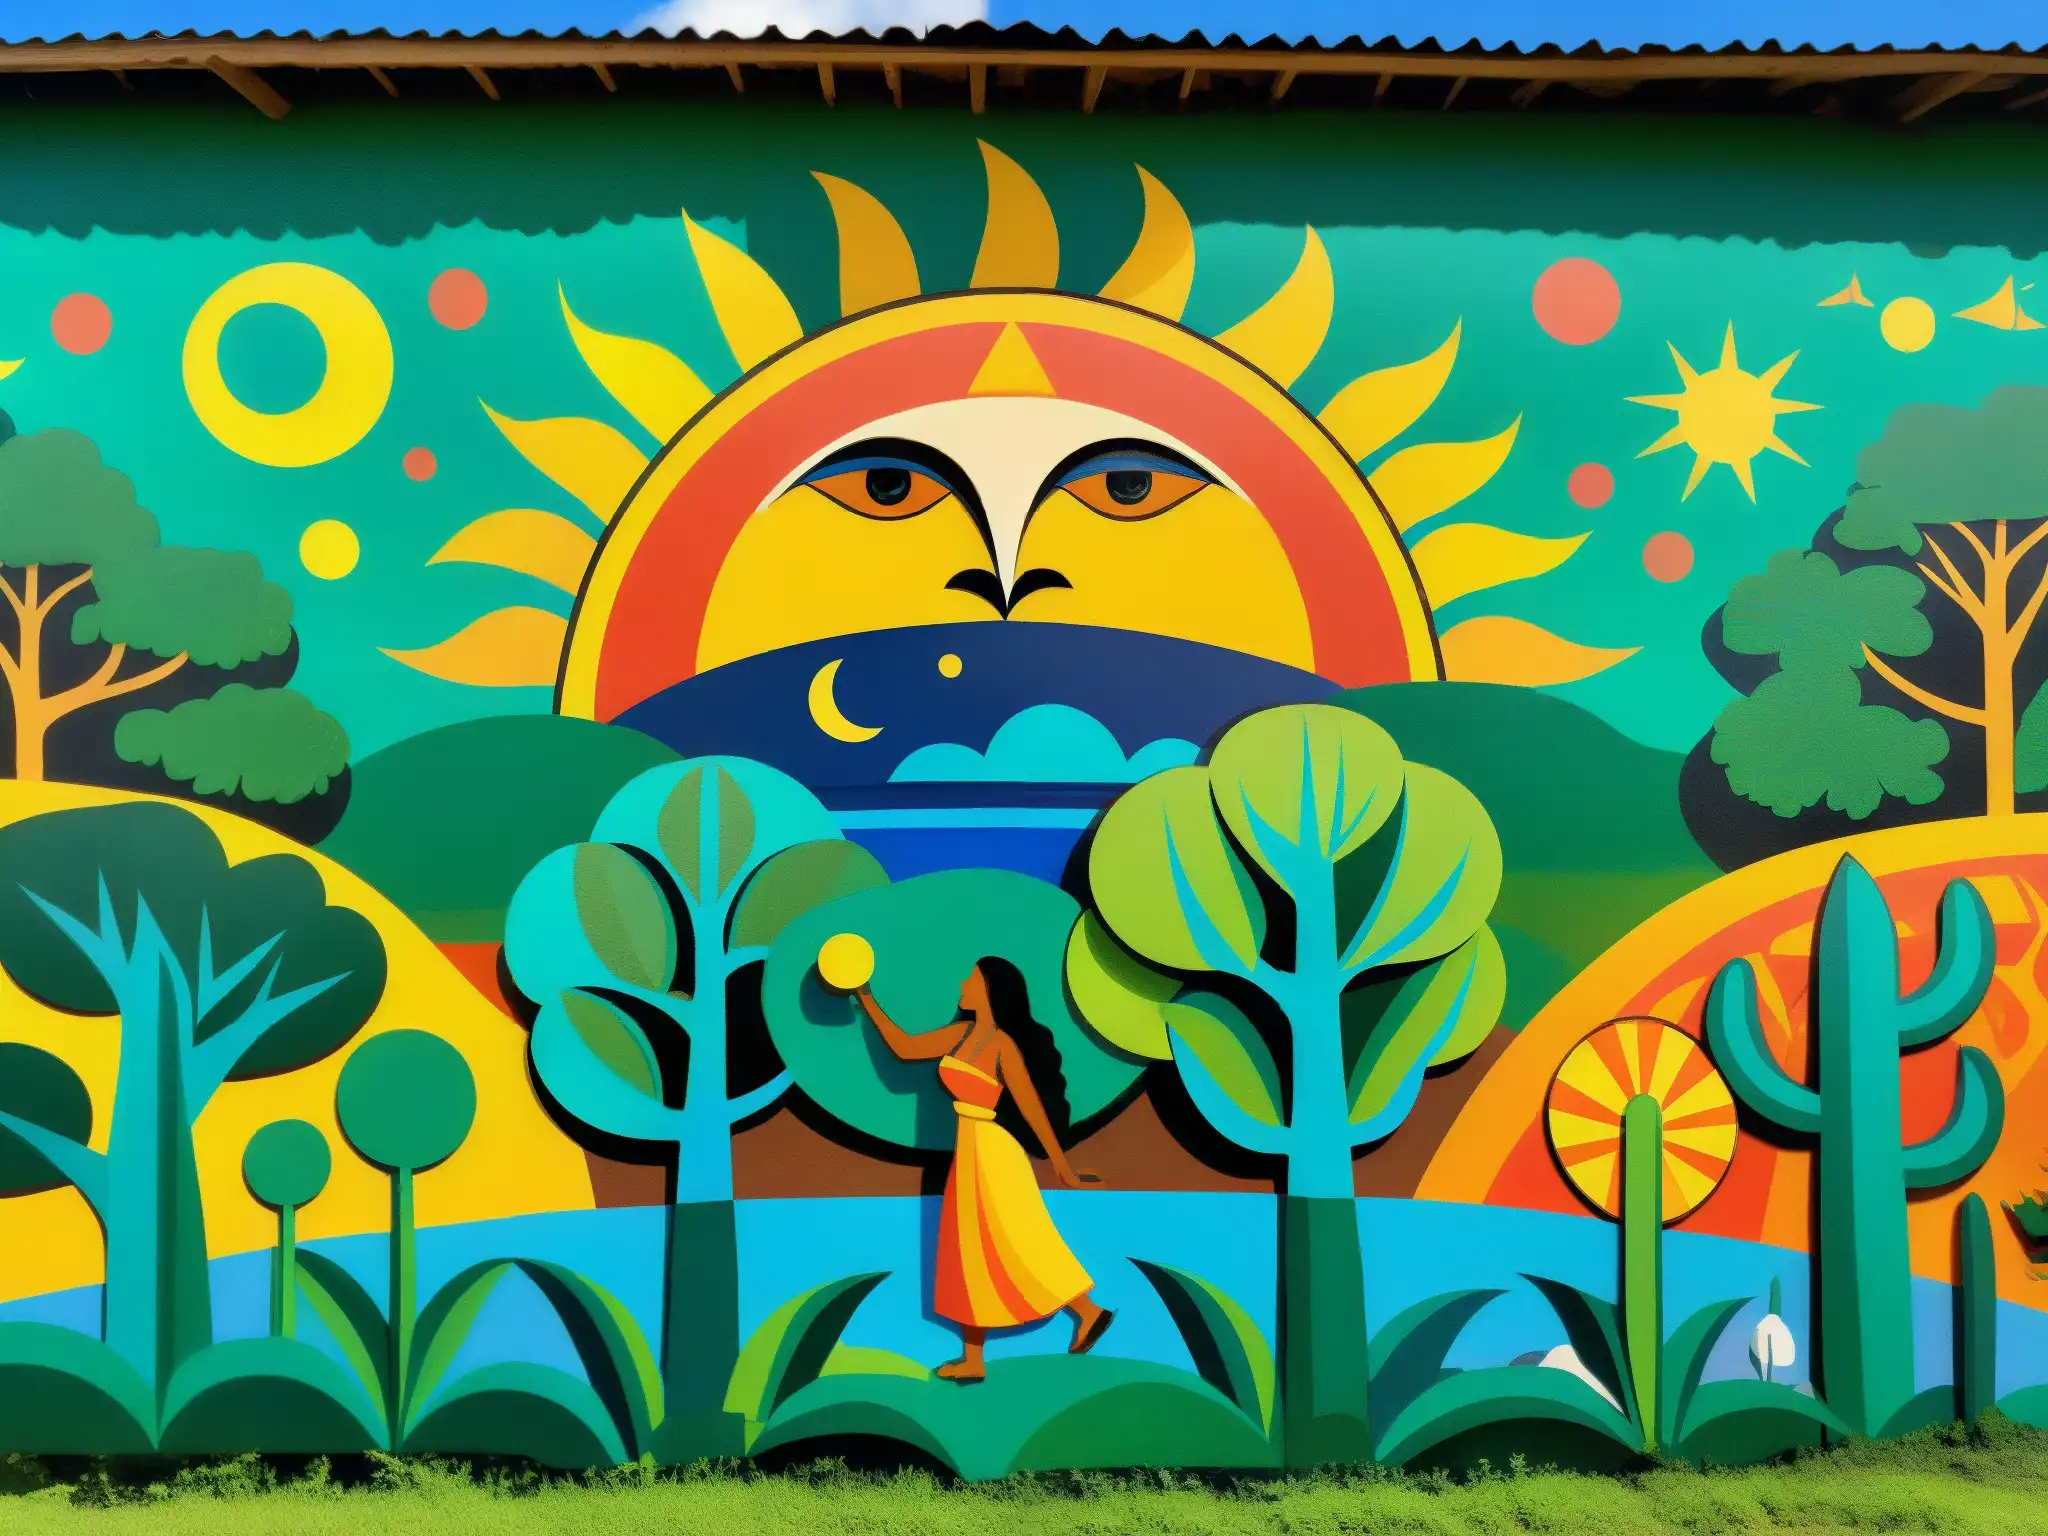 Vibrante mural del mito de creación guaraní, con Tupã moldeando la tierra, el sol y la luna, rodeado de exuberante naturaleza y vida salvaje